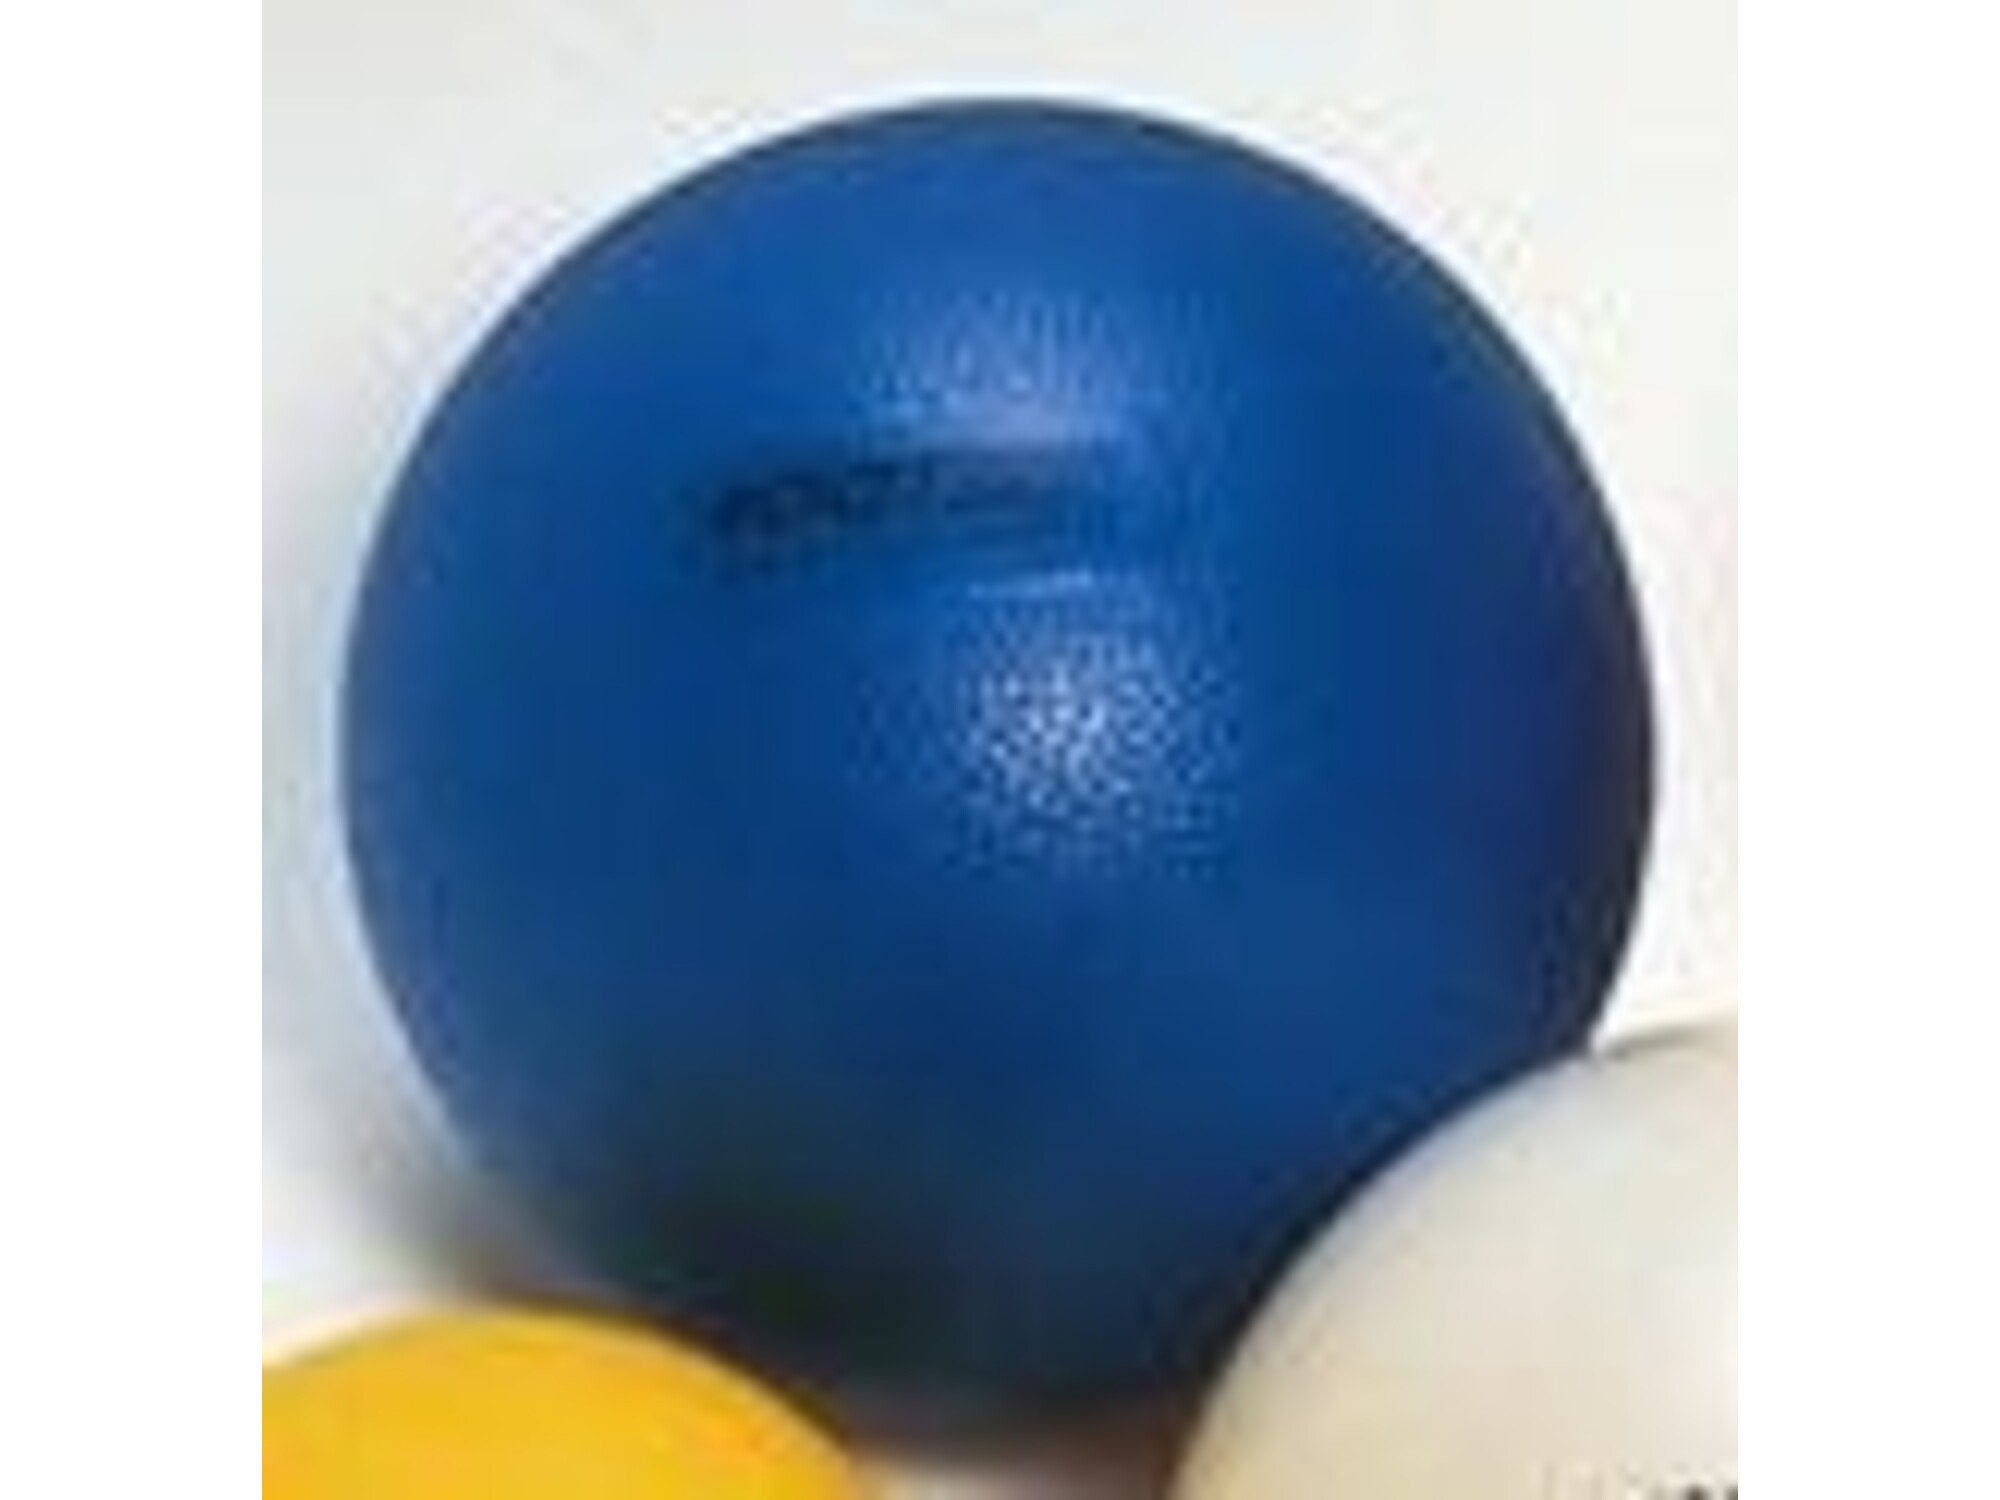 GYMNIC žoga za nogomet PVC 220 gr. LP 82.12